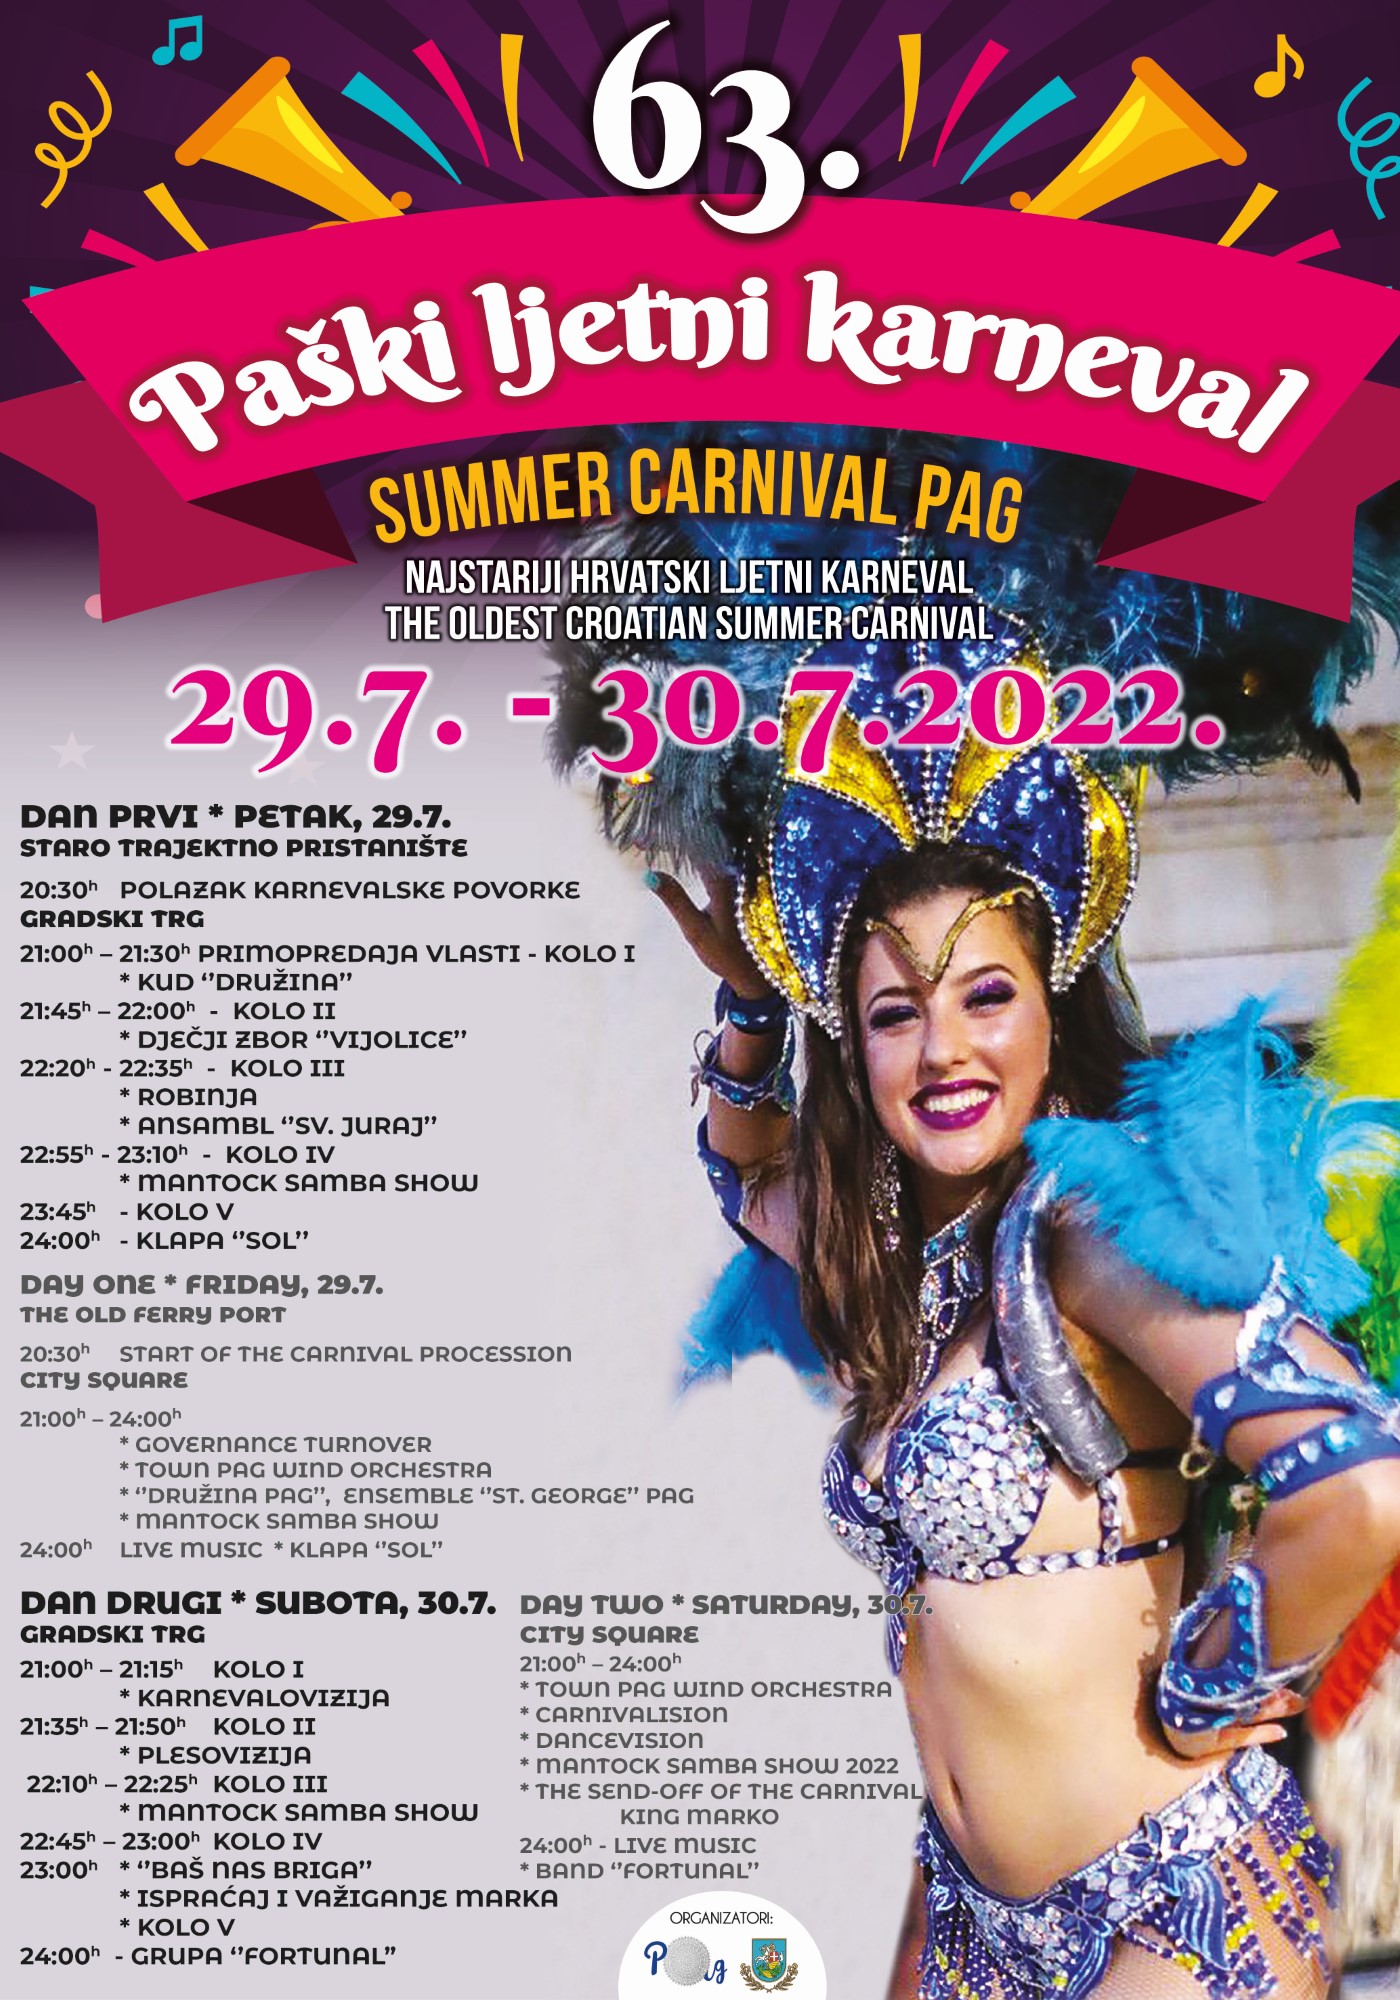 Paski ljetni karneval 2022 plakat